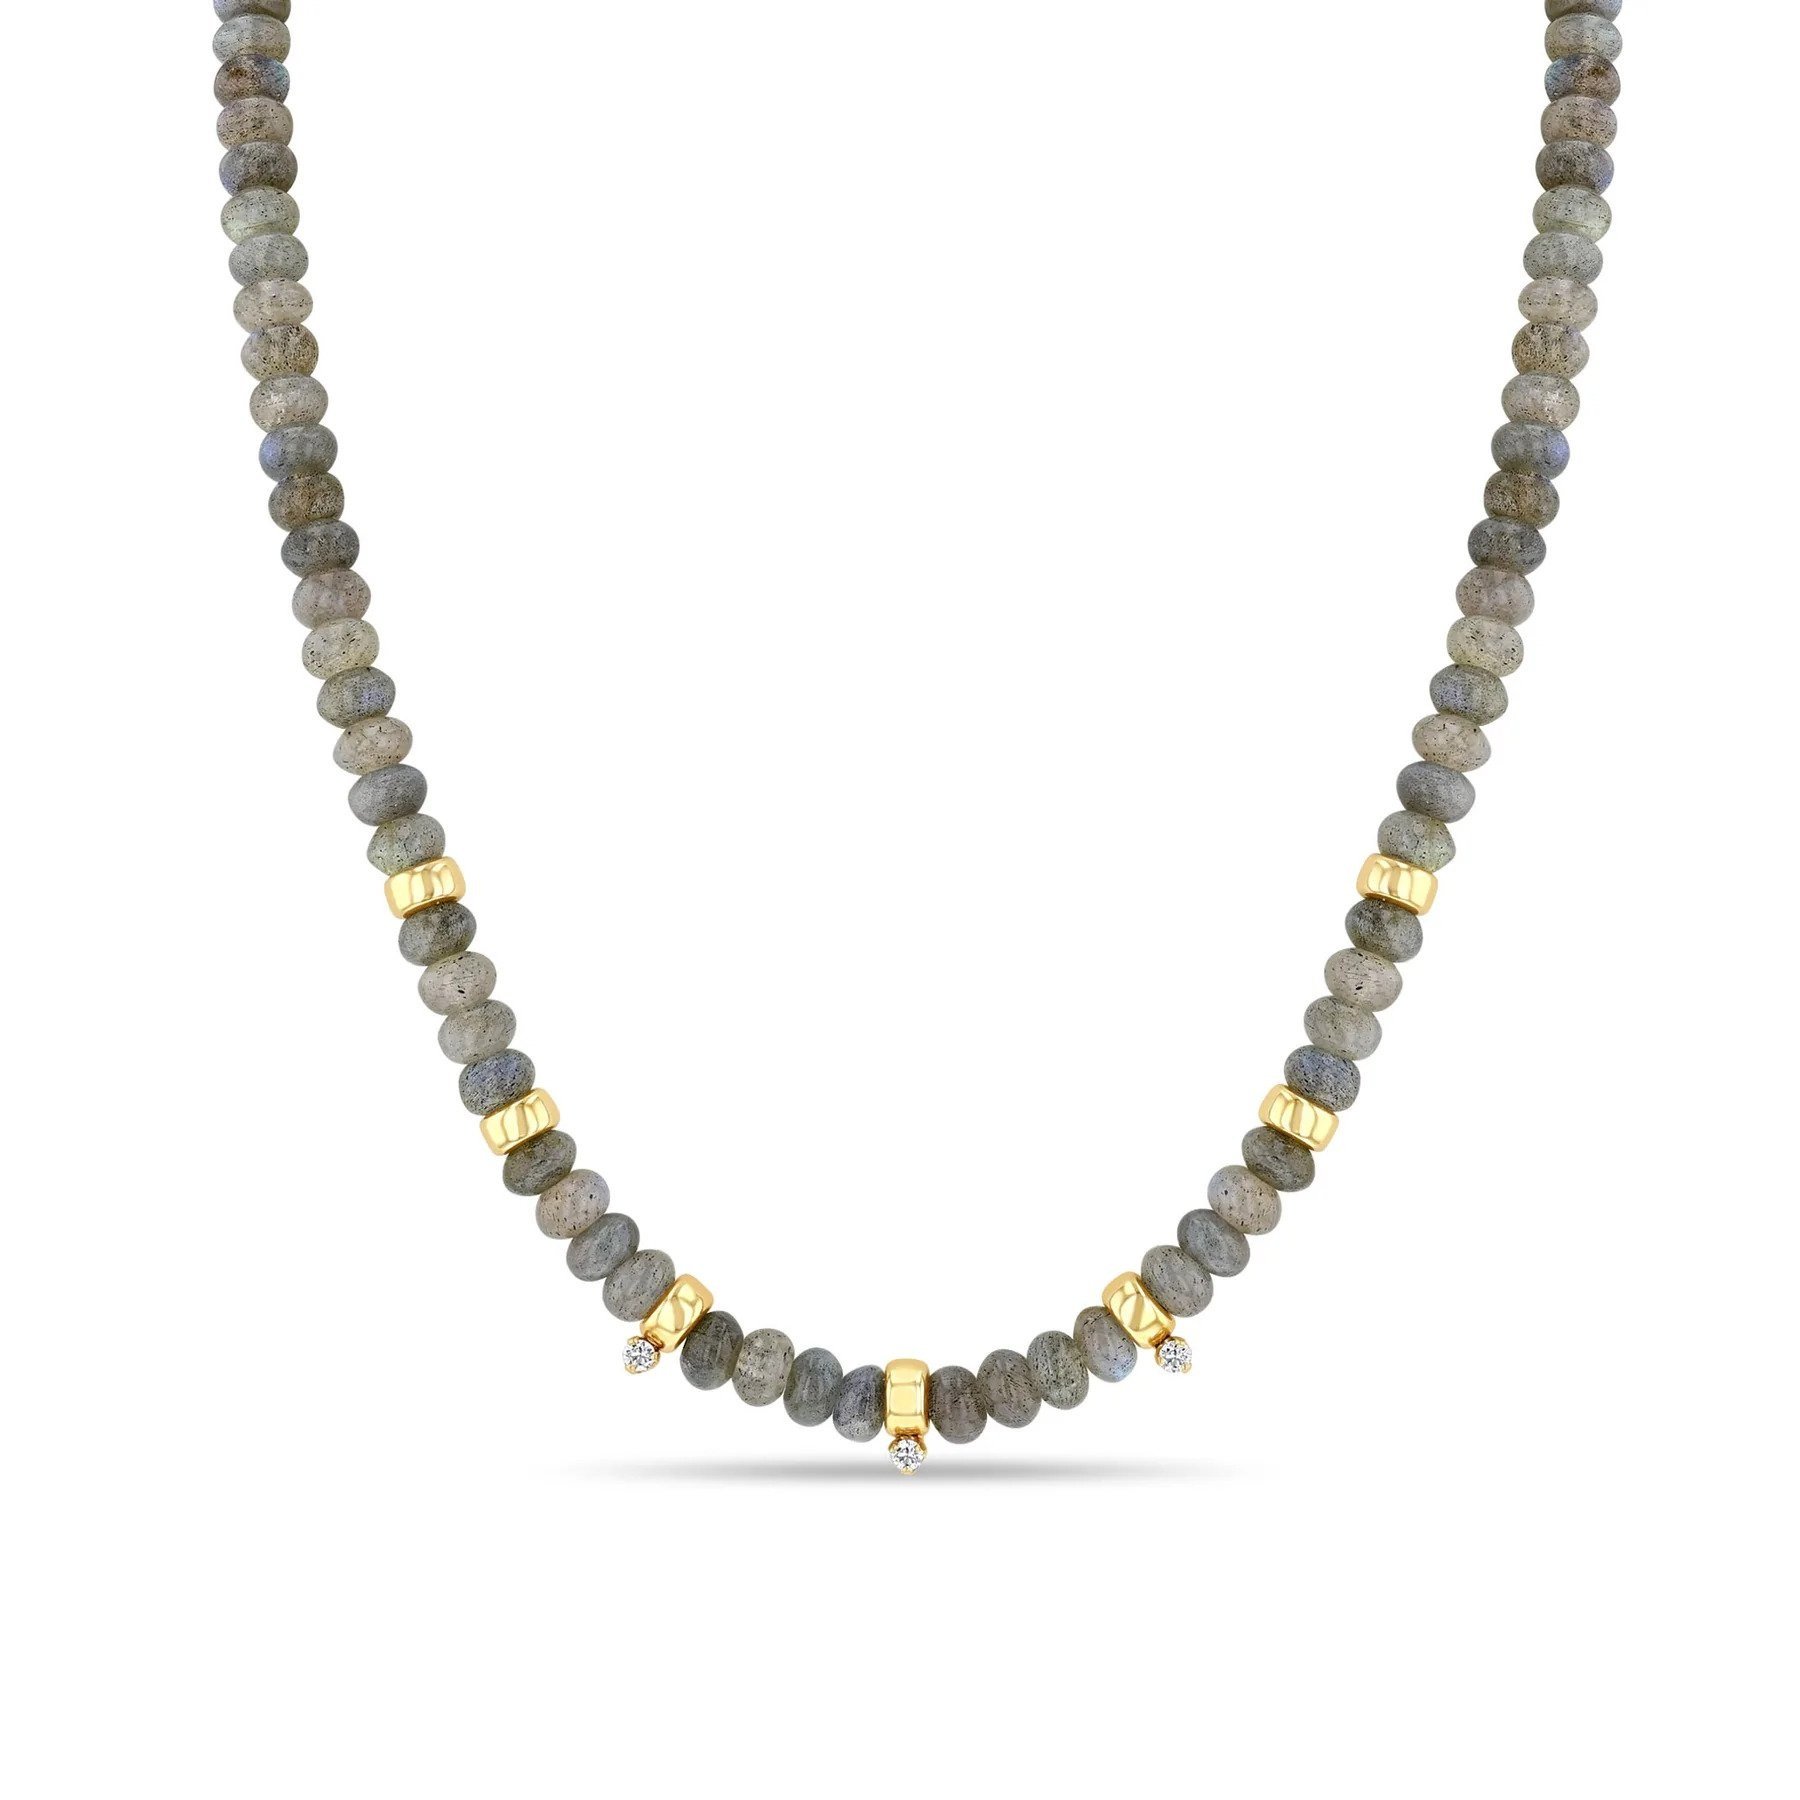 Zoe Chicco Labradorite Rondelle Bead Necklace, $990